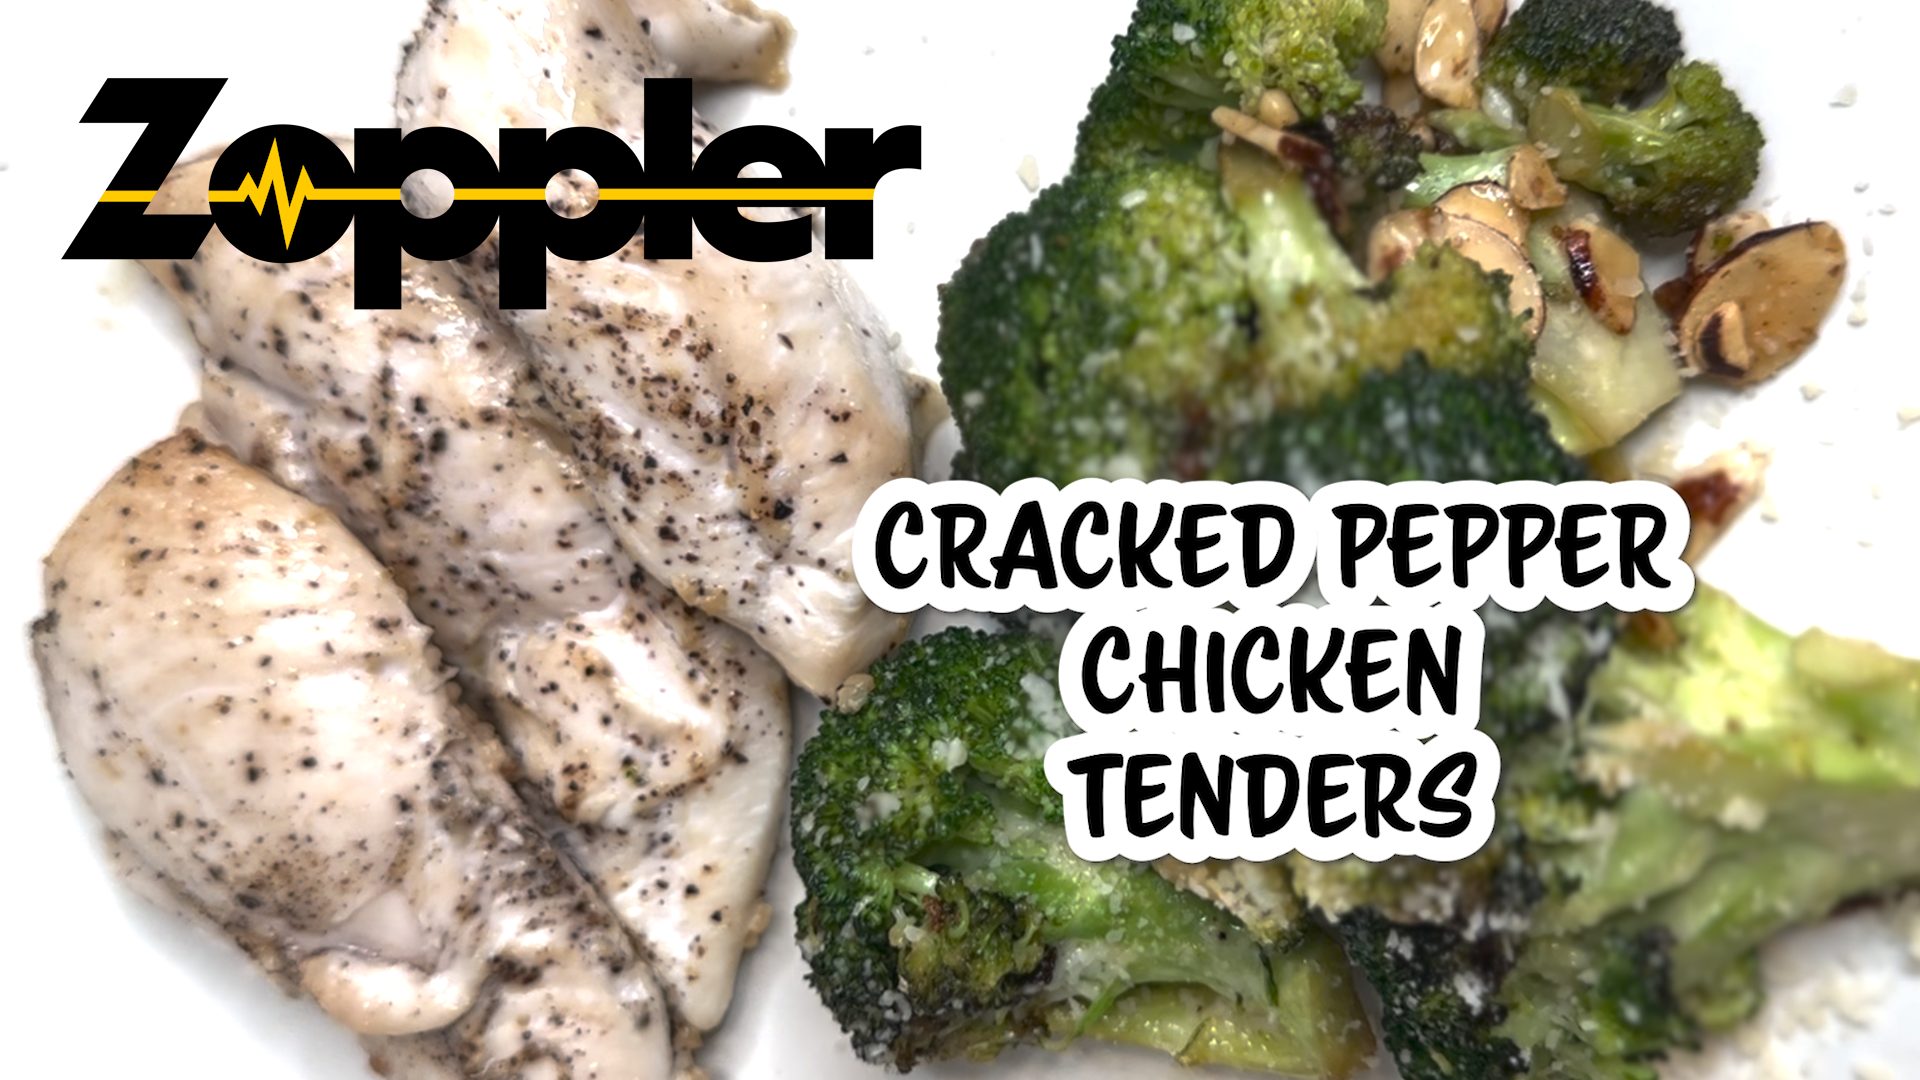 Cracked Pepper Chicken